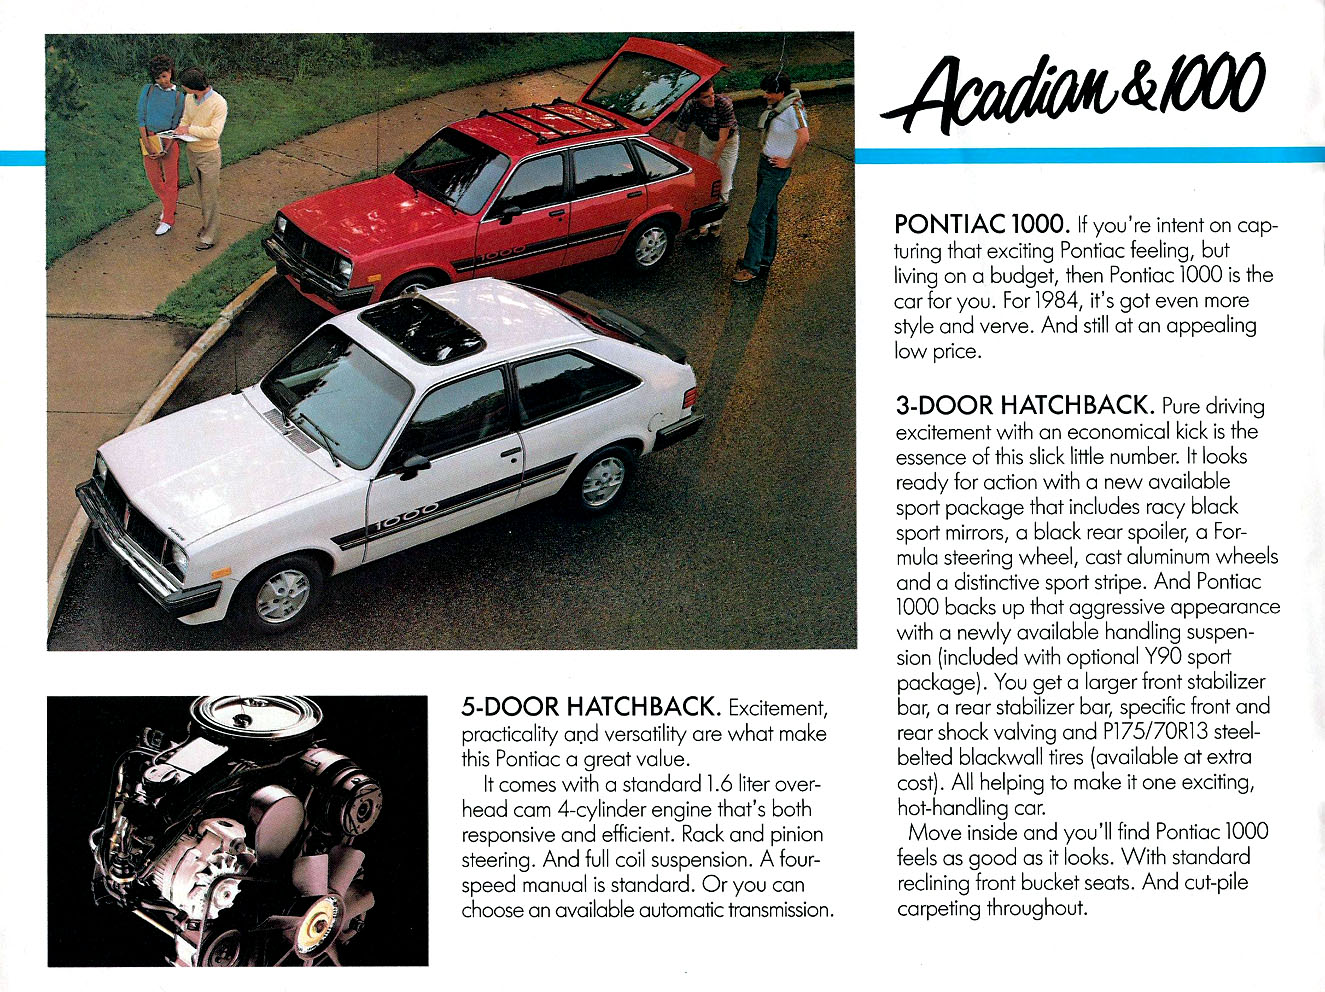 1984_Pontiac_Acadian_Cdn-02